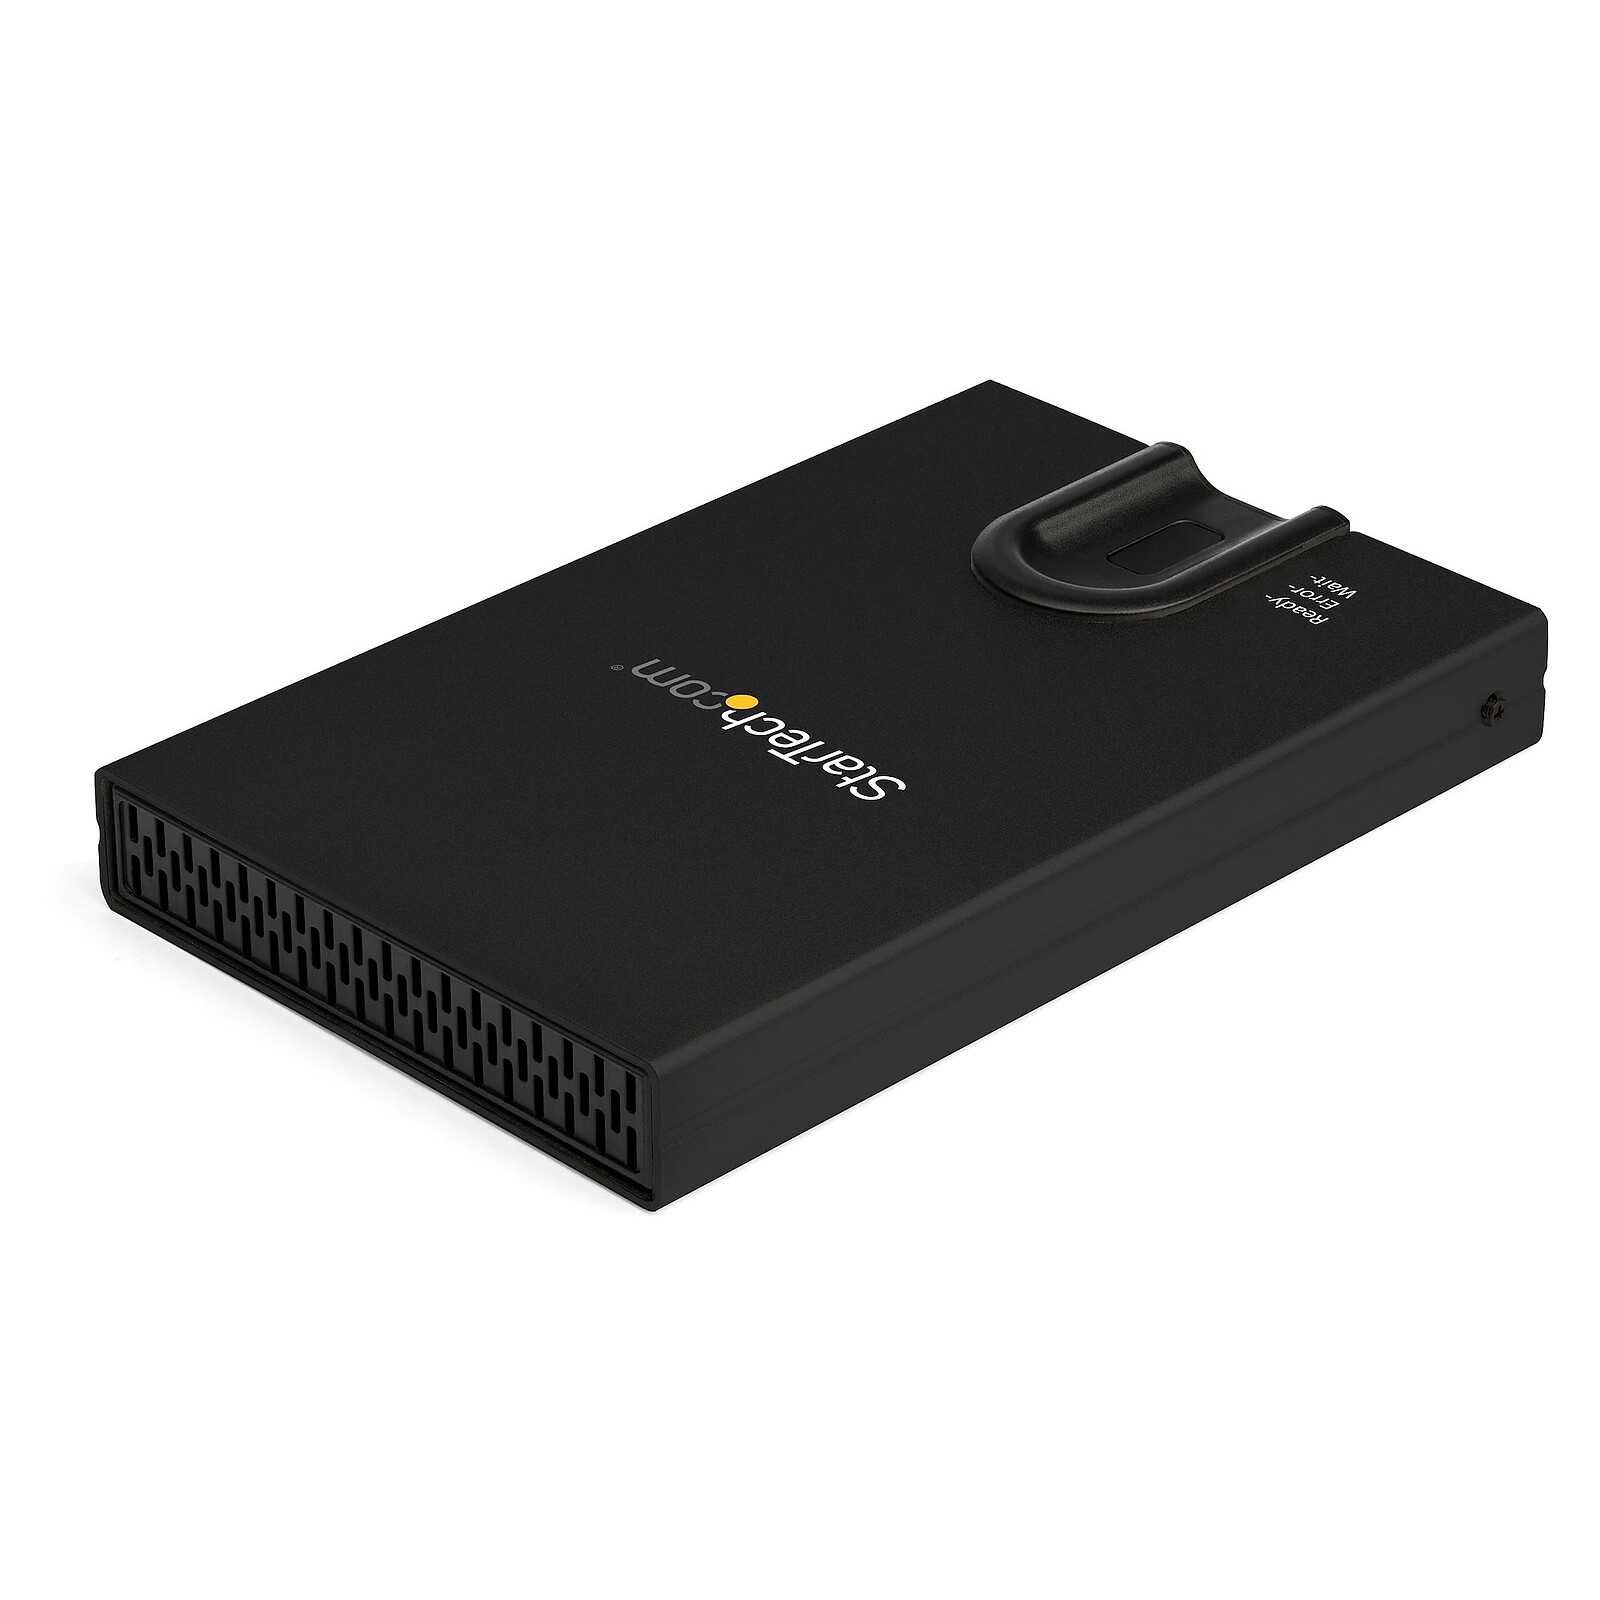 Boîtier USB 3.0 pour HDD / SSD SATA 3,5' - Boîtiers de disque dur externe